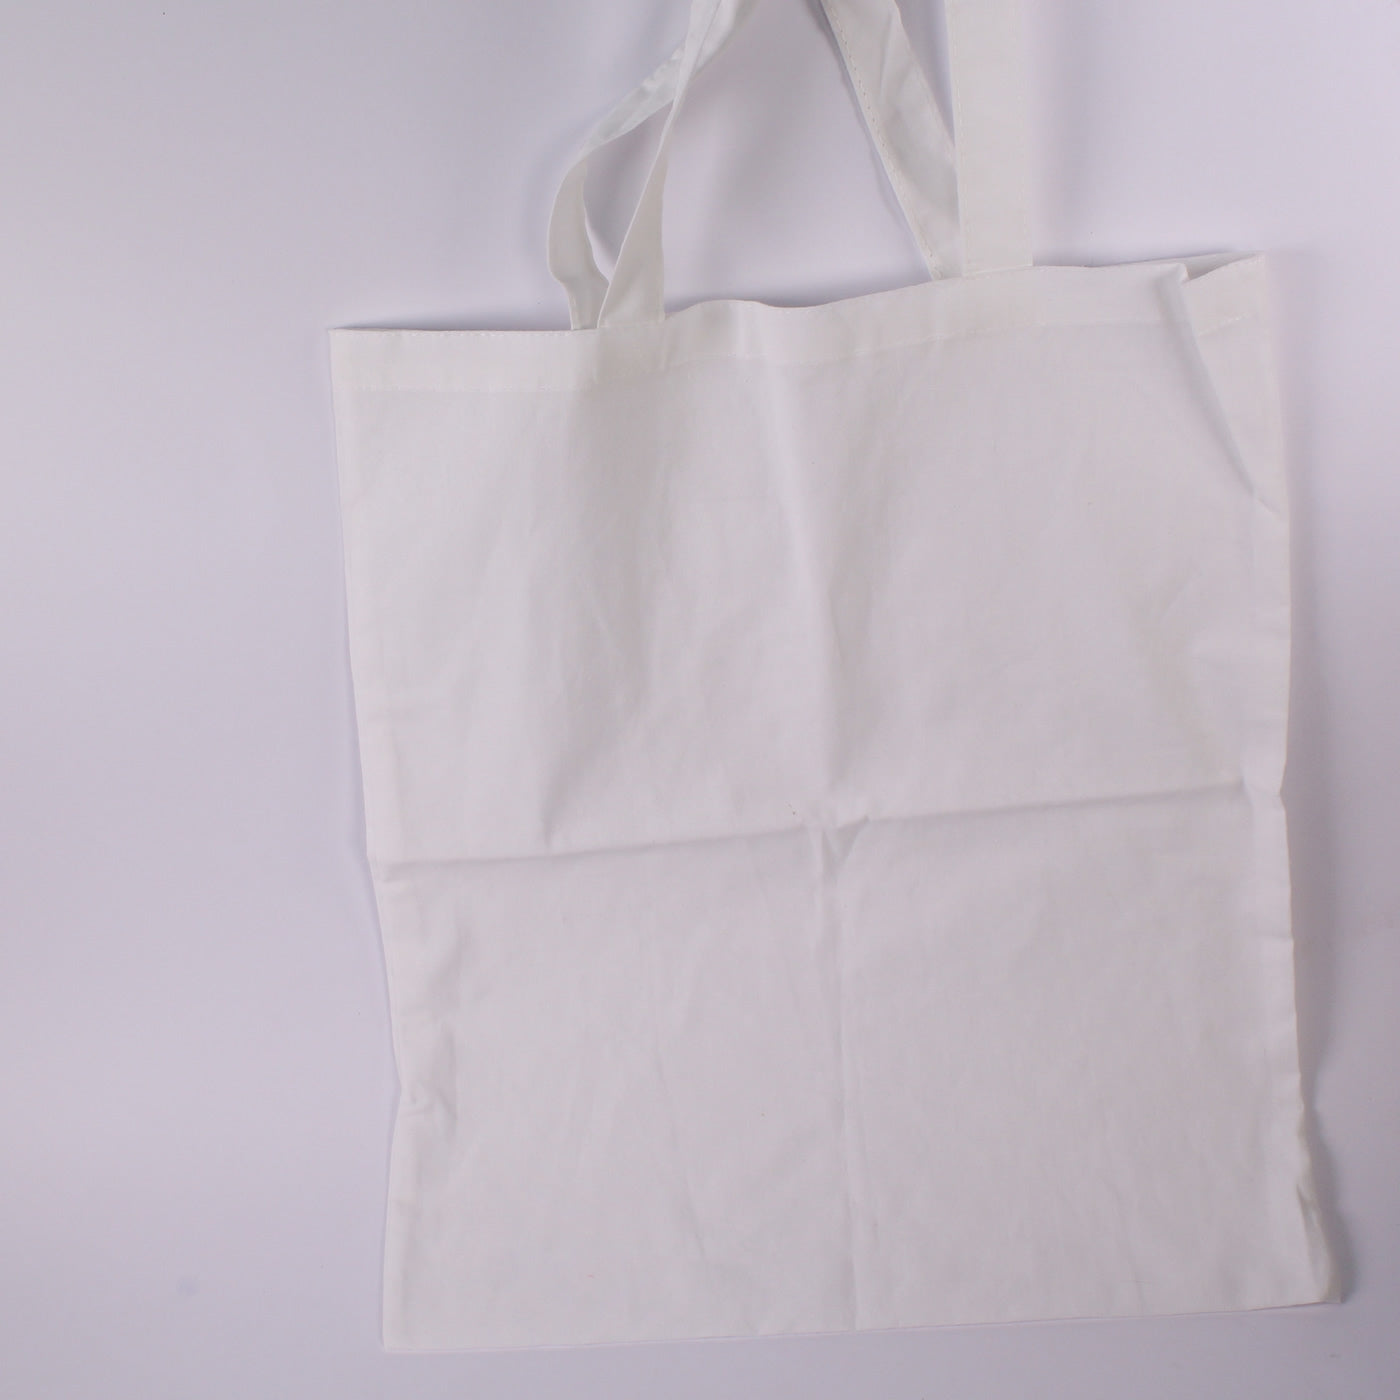 White calico bag